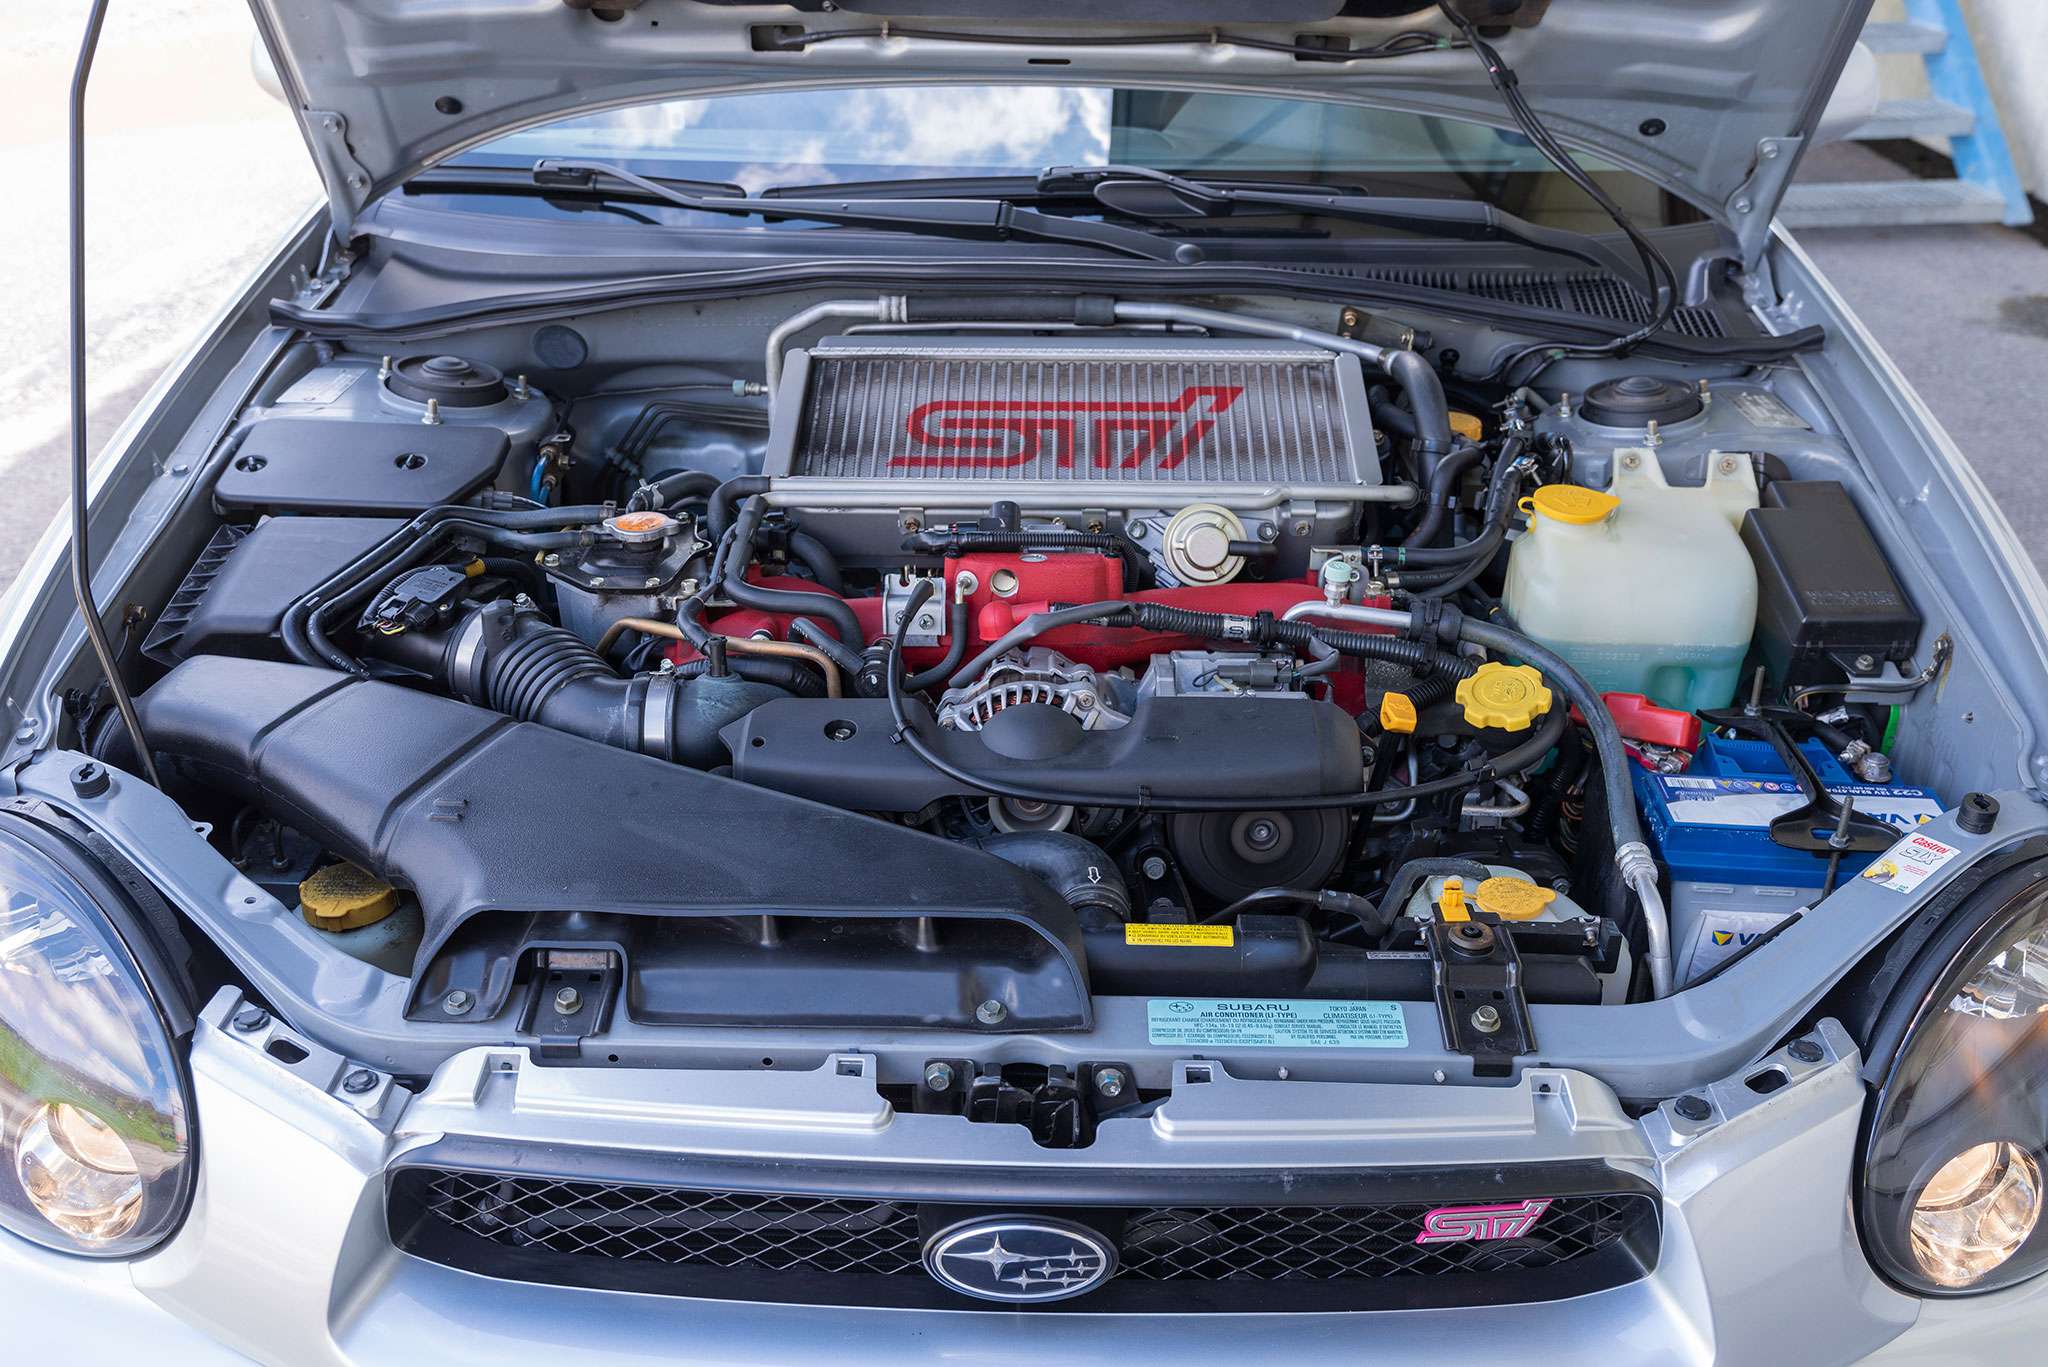 2001 Subaru Impreza WRX STI – le moteur de 1994 cm³ développe 265 chevaux accolé à une boîte à 6 rapports.